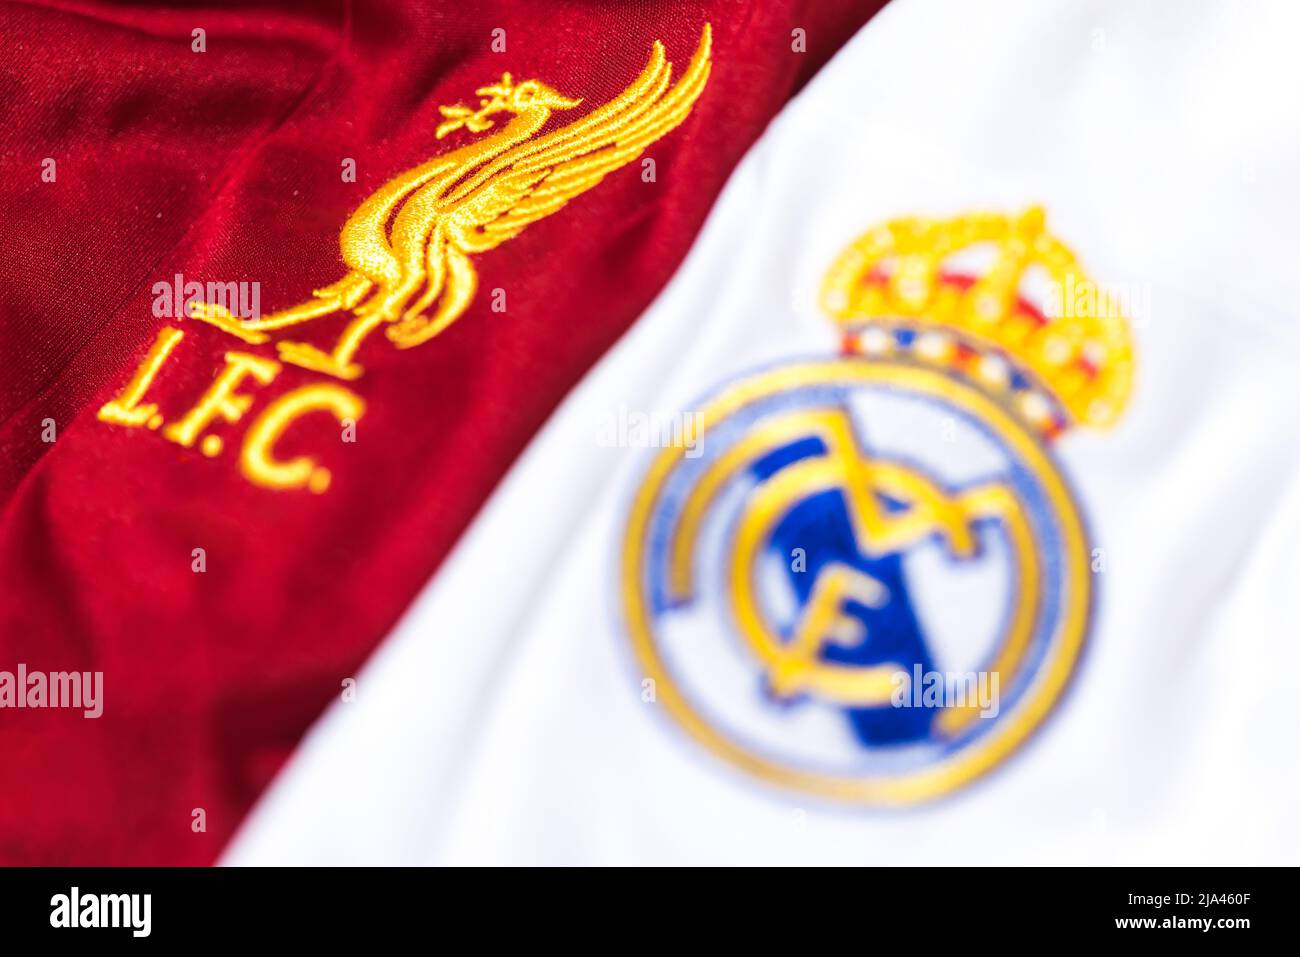 Escudo centrado en la camiseta del Liverpool Club de Fútbol junto al escudo fuera del foco del Real Madrid en su camiseta. Final de la UEFA campeones de la liga con Foto de stock